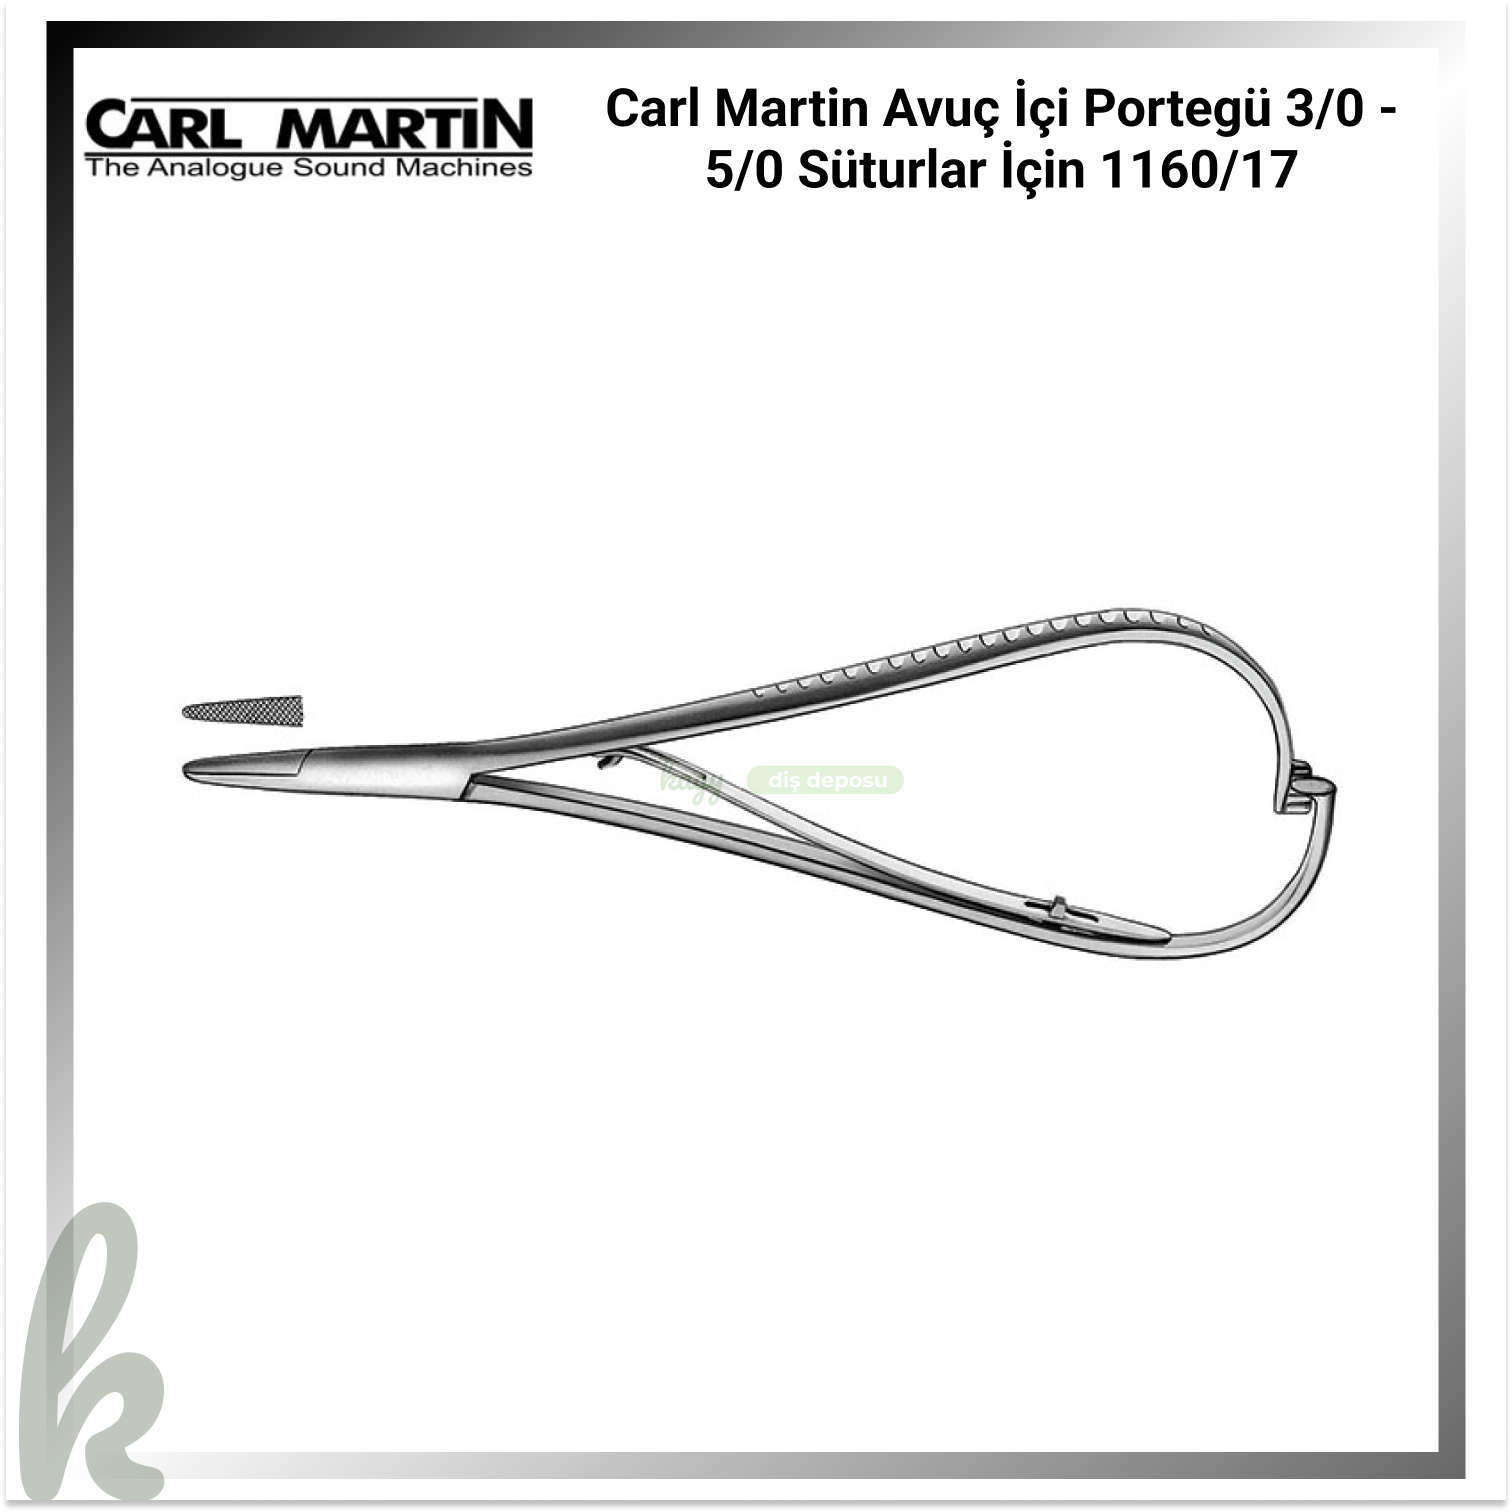 Carl Martin Avuç İçi Portegü 3/0 - 5/0 Süturlar İçin 1160/17